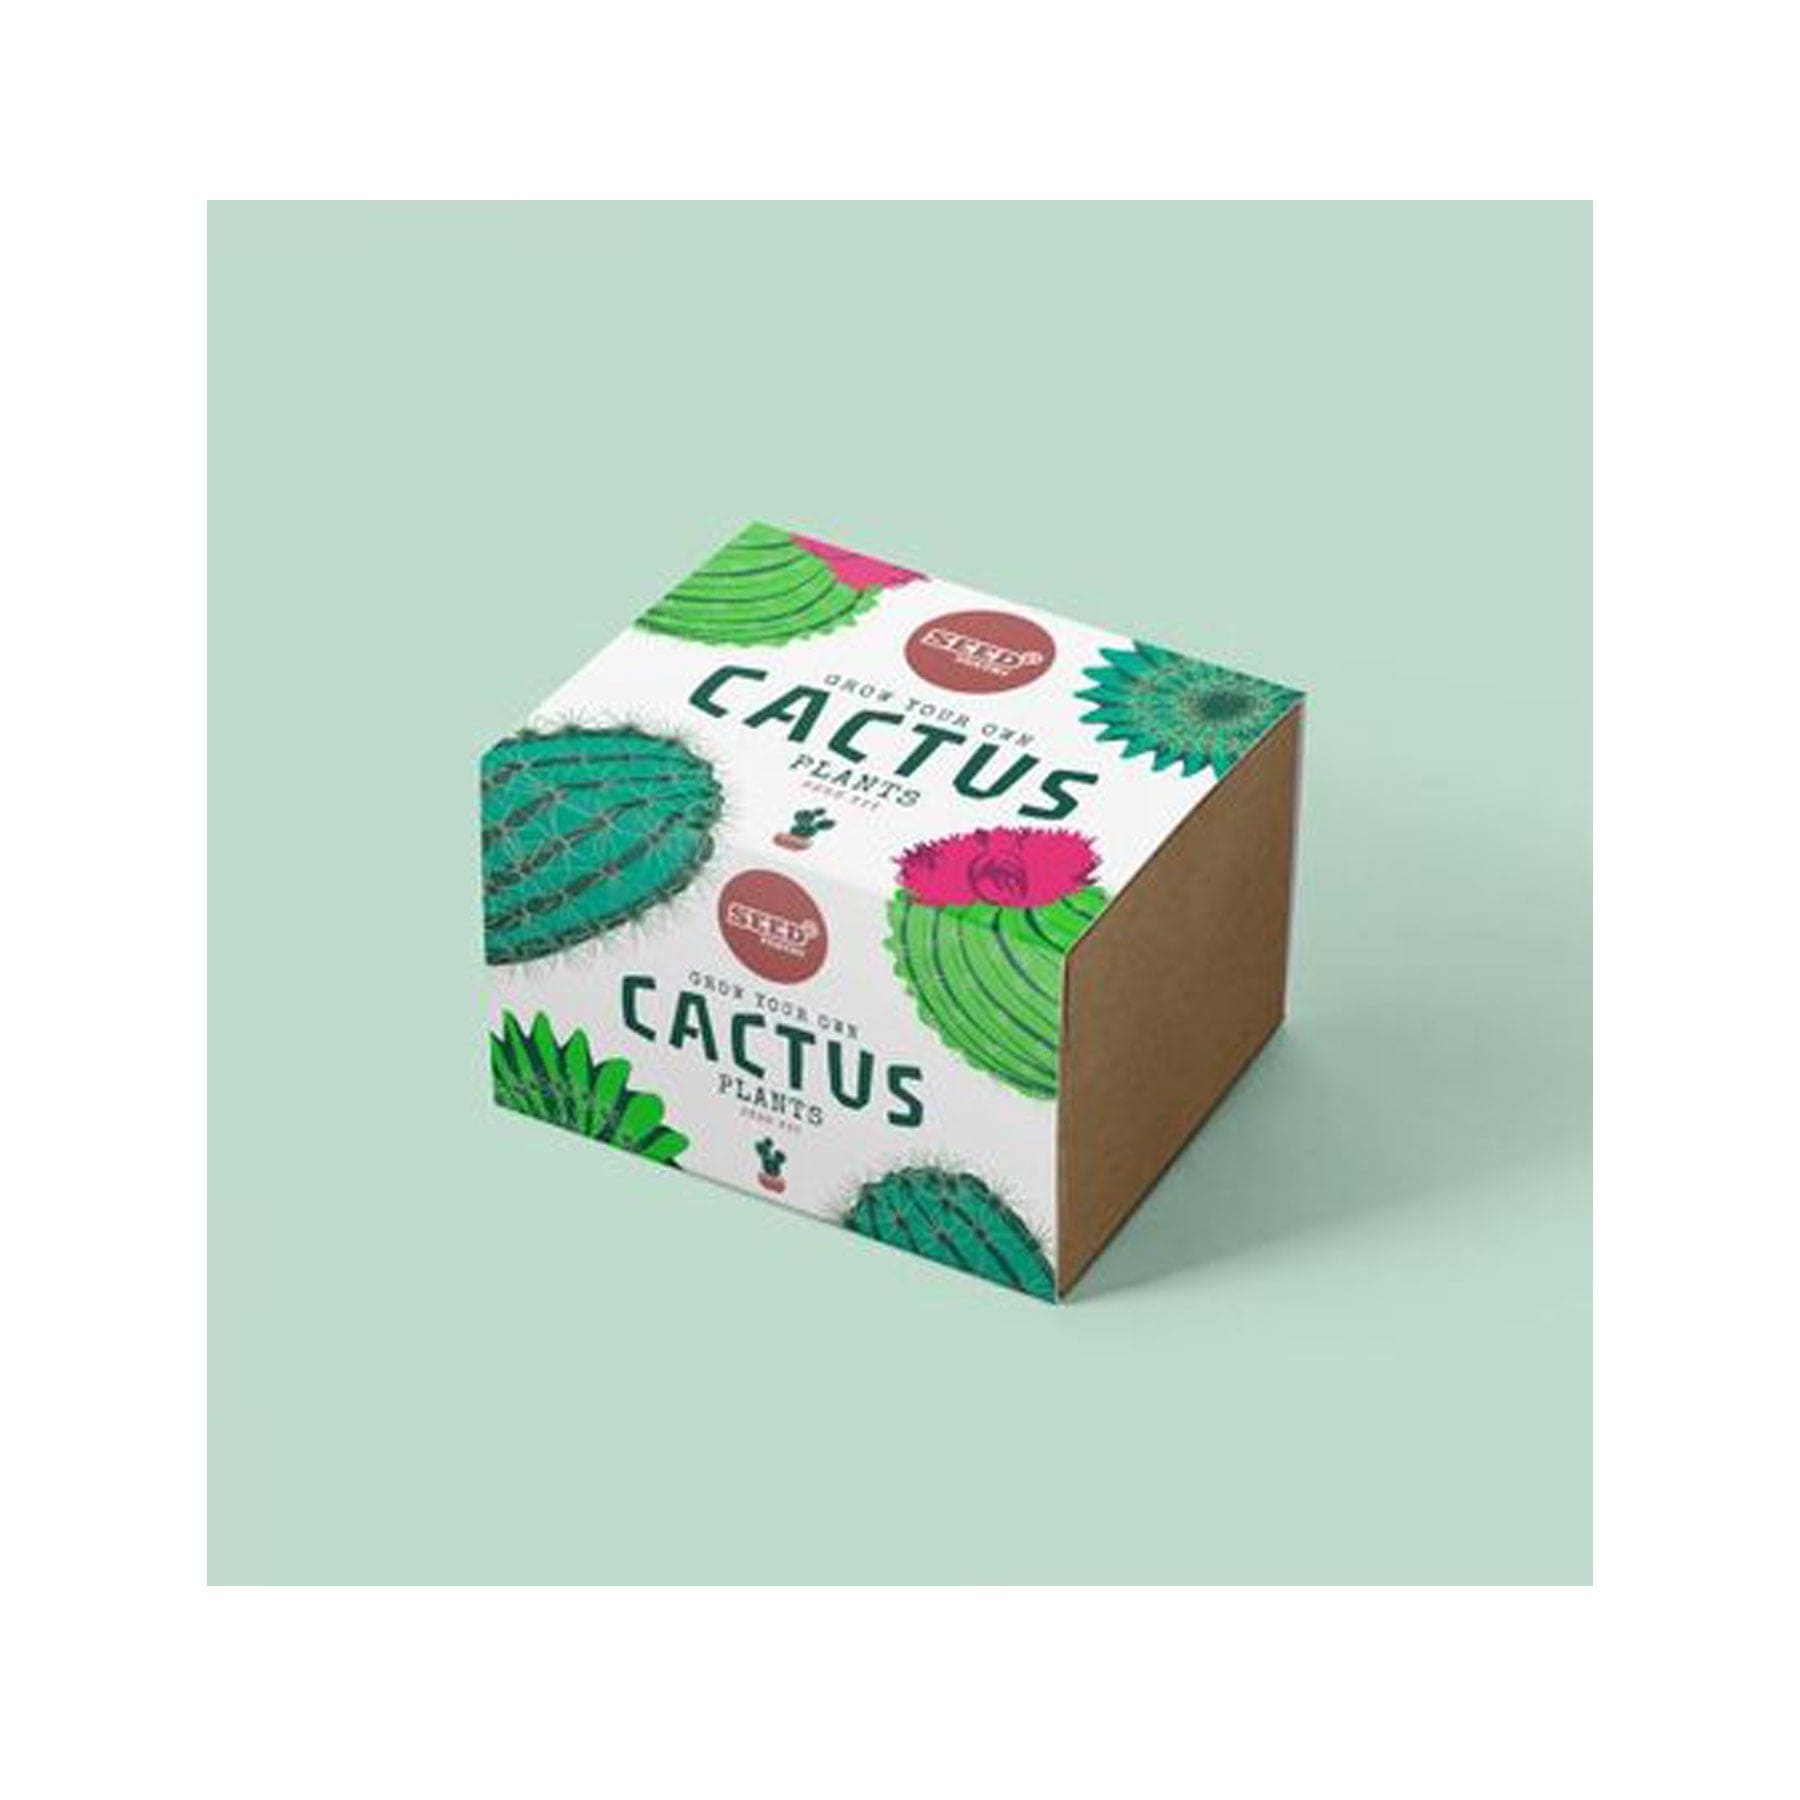 Cactus mix seed kit